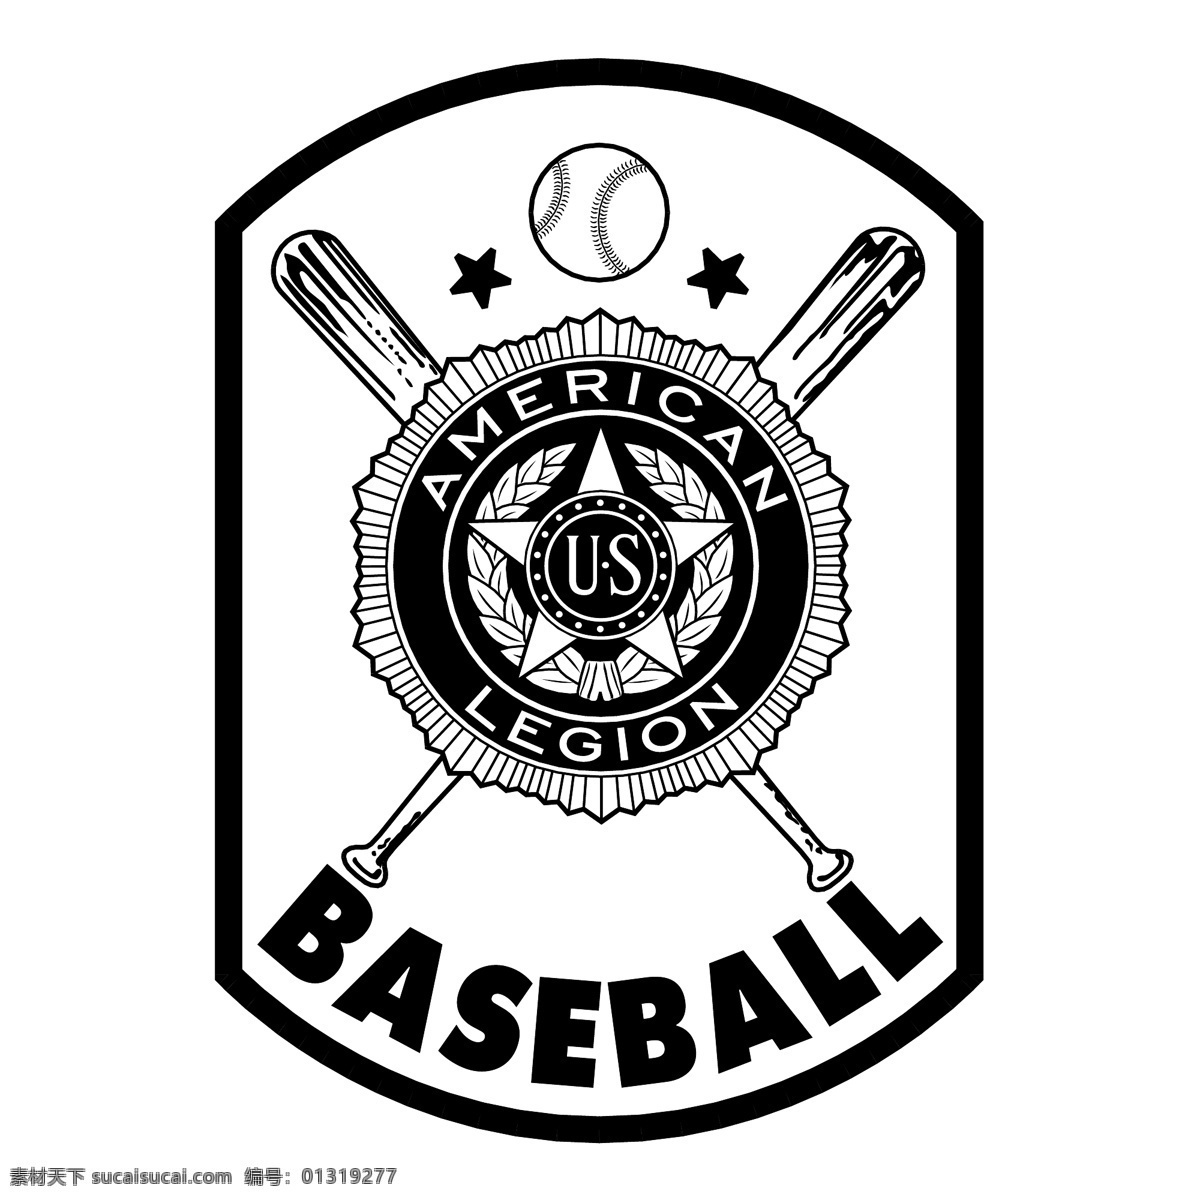 美国 棒球 军团 标识 公司 免费 品牌 品牌标识 商标 矢量标志下载 免费矢量标识 矢量 psd源文件 logo设计